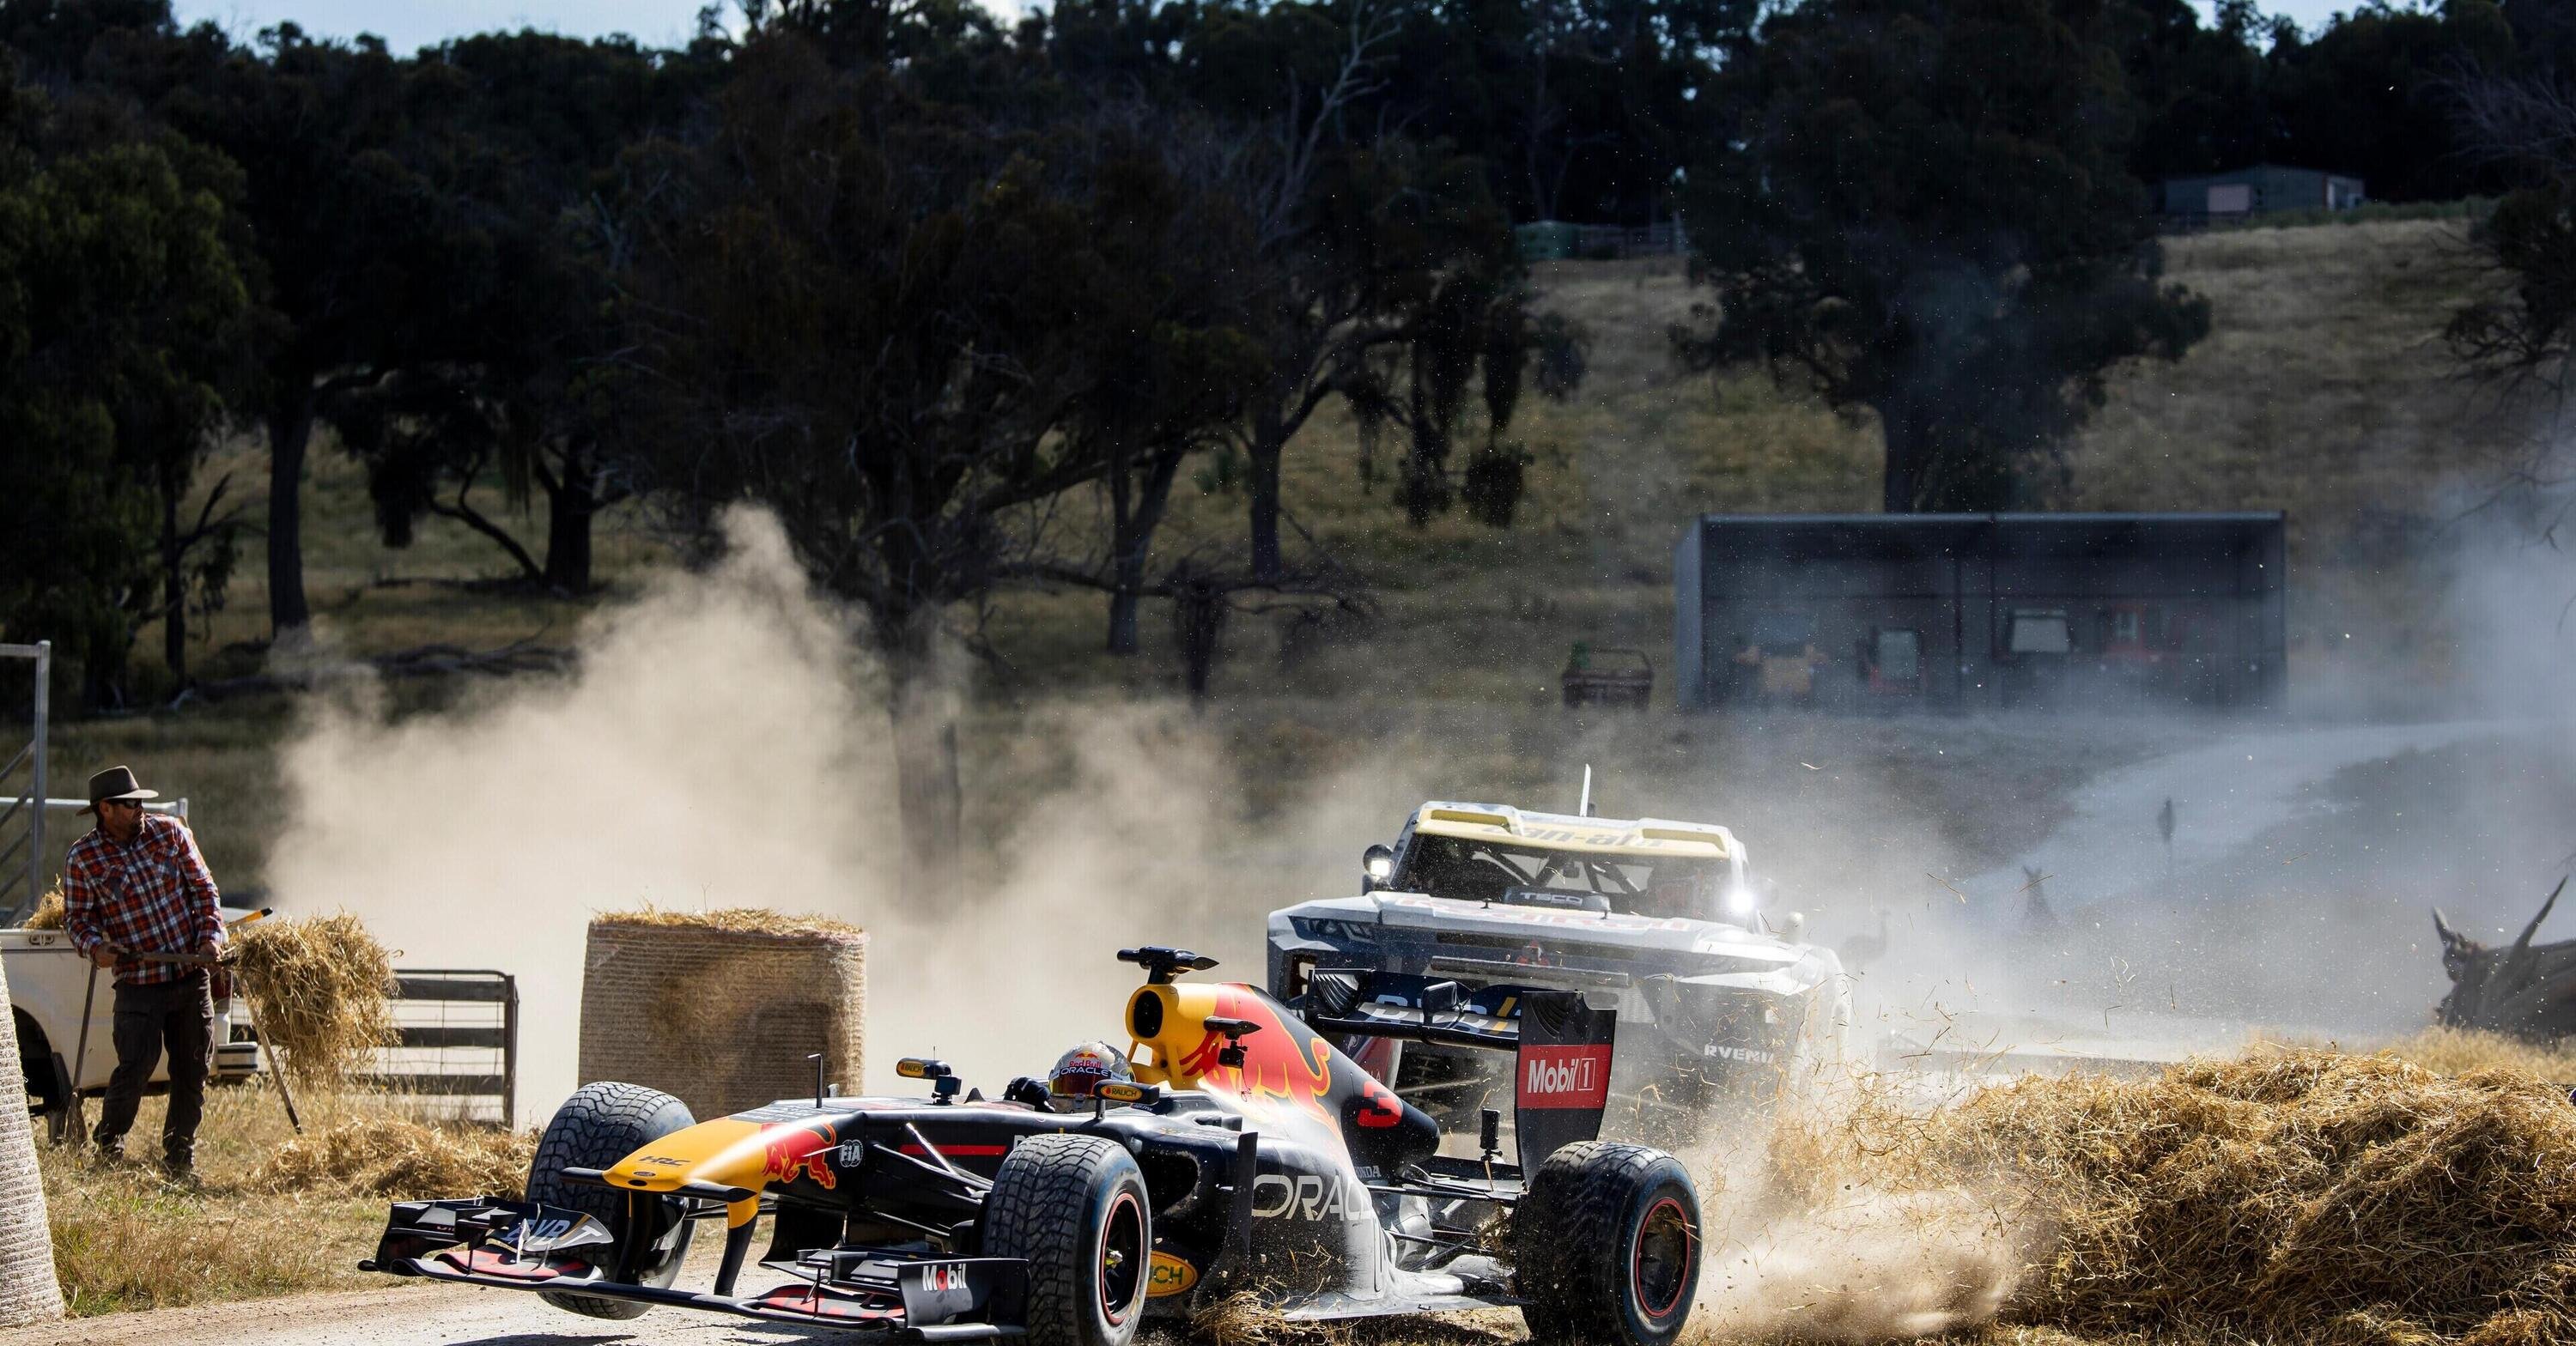 Su una F1 in Australia: Daniel Ricciardo in giro con la Red Bull RB7 [Video]